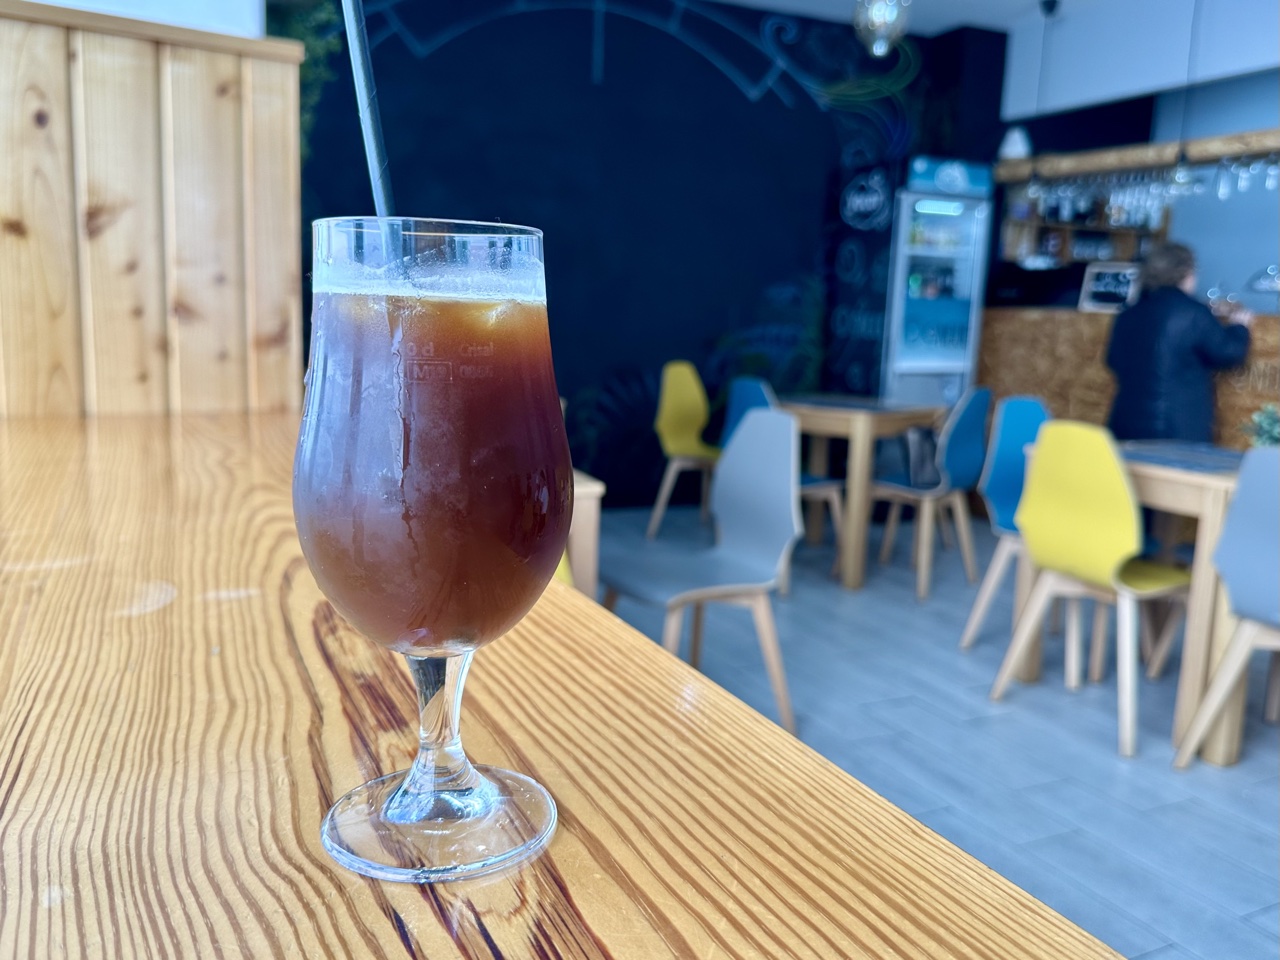 Excelente café em Ponta Delgada, Portugal (São Miguel – Açores)